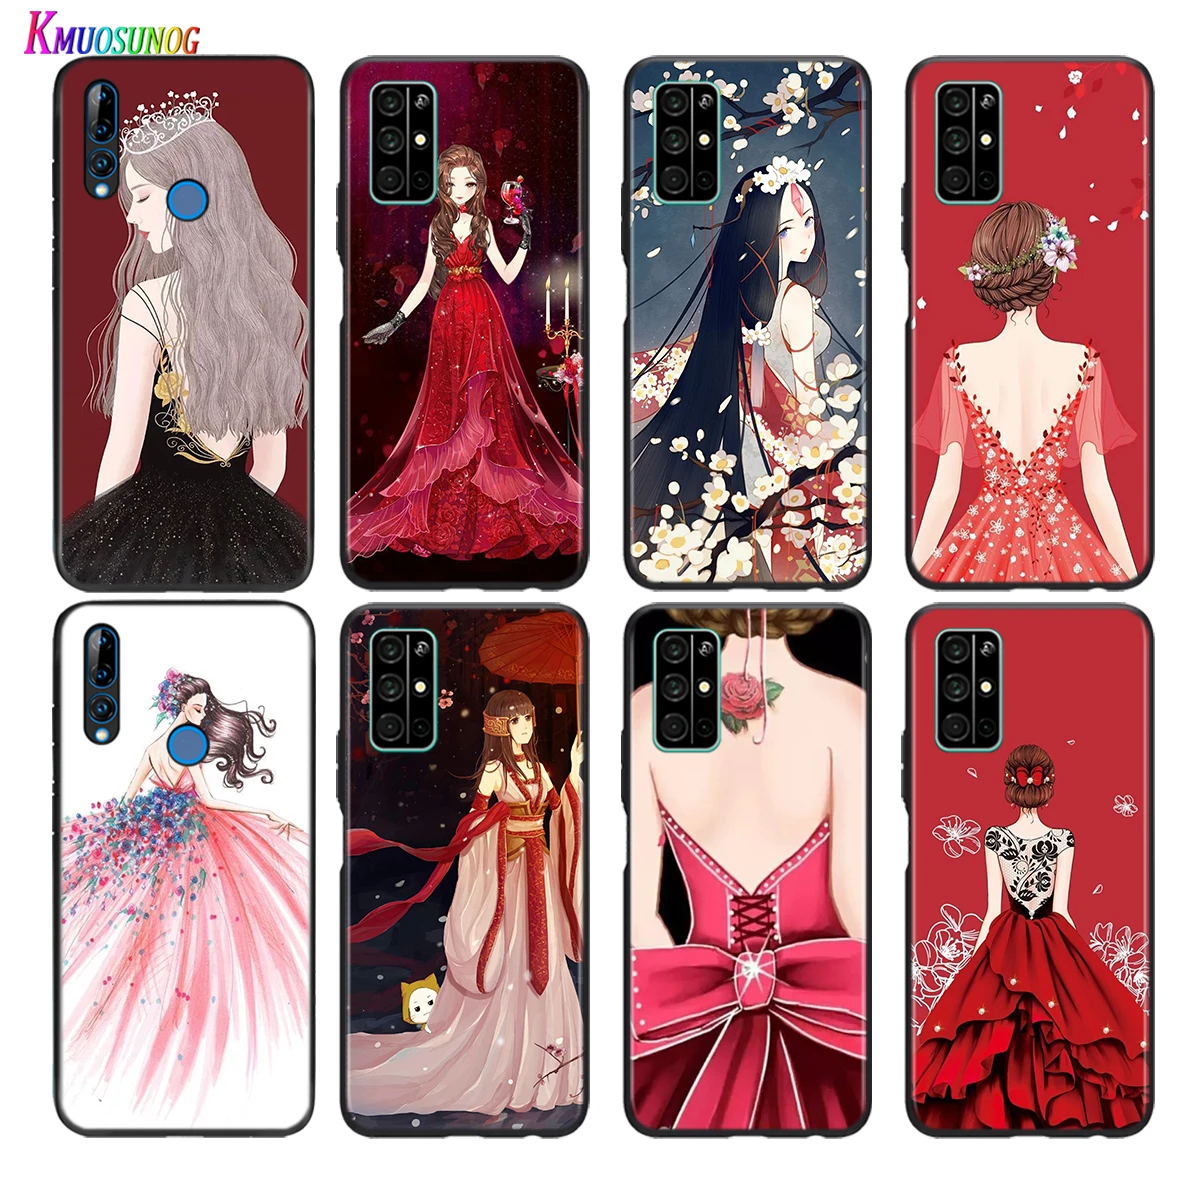 

Soft Black Cover Wedding Dress Girl For Honor 30 30S V30 V20 9N 9S 9A 9C 20S 20E X10 20 7C Lite Pro Plus Phone Case